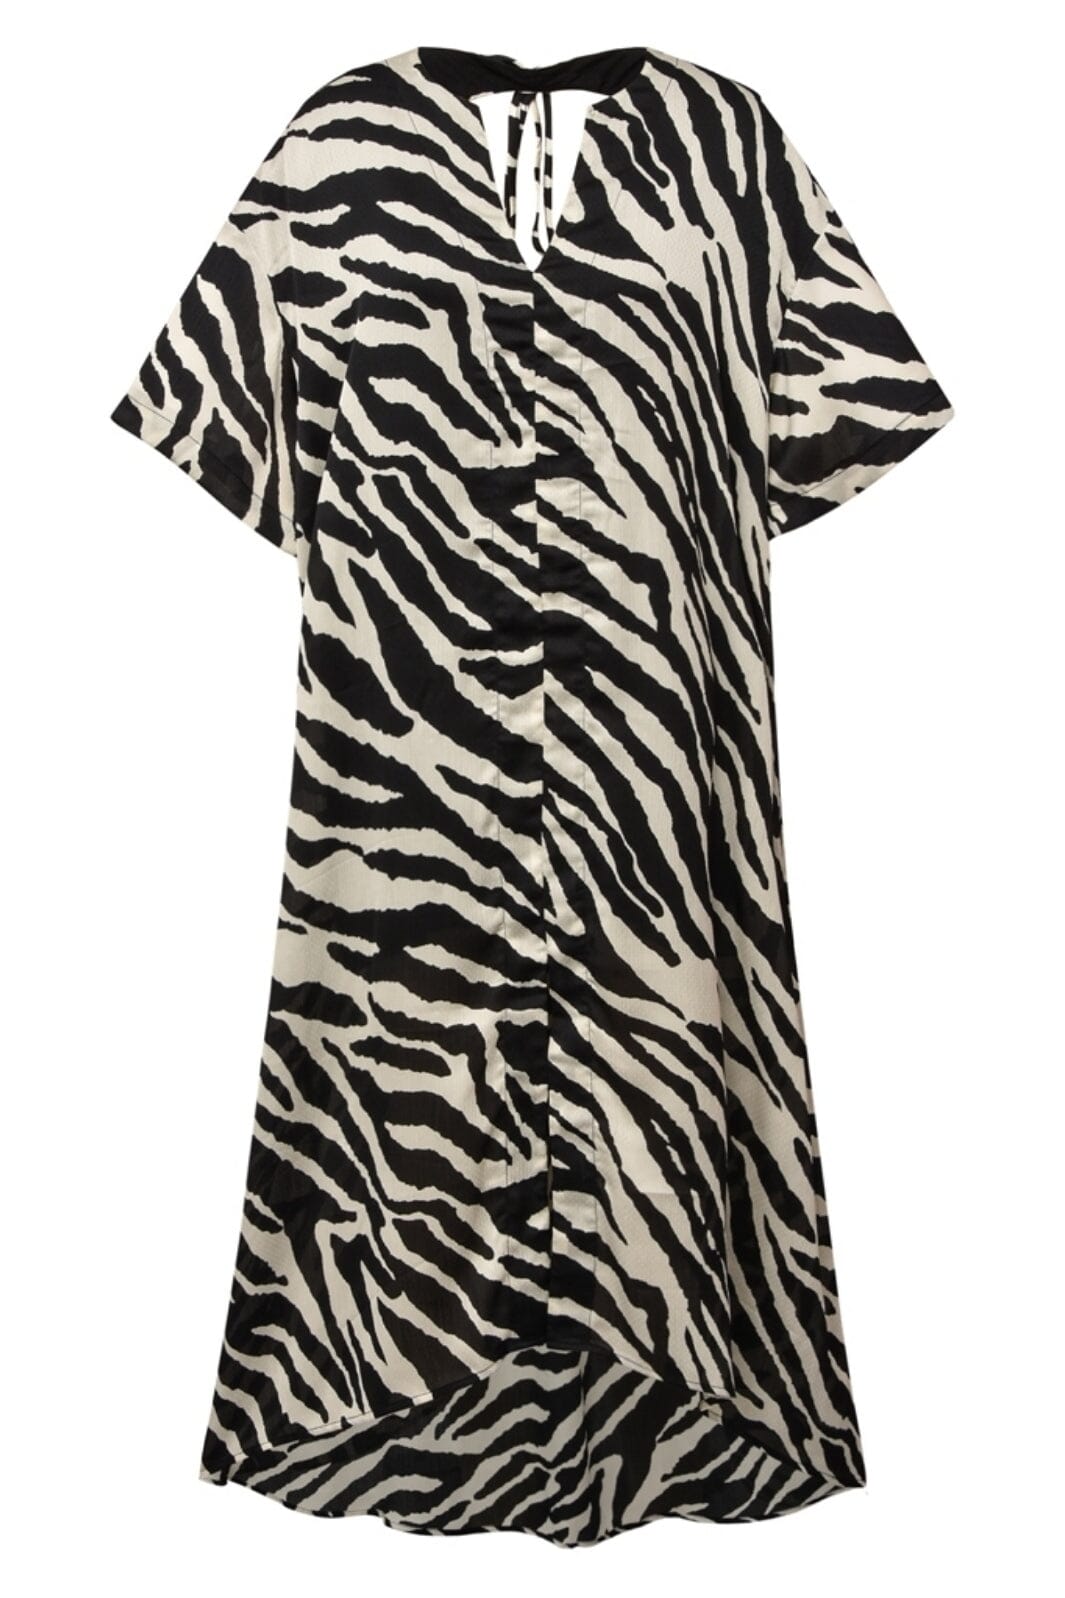 Gossia - NajaGO Dress - Black Zebra Kjoler 